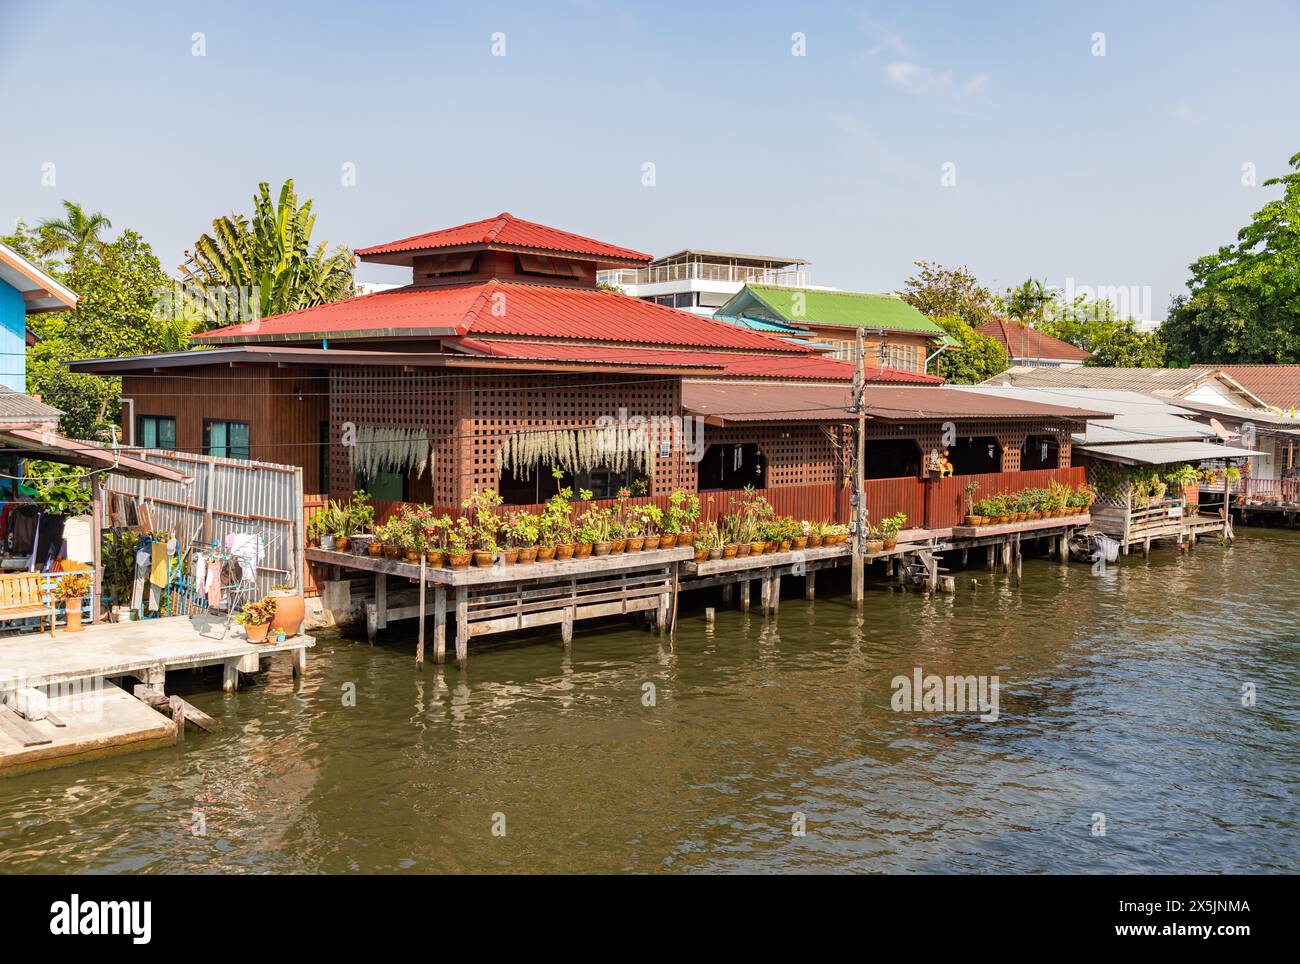 Ein Bild von Kanalhäusern in Bangkok. Stockfoto